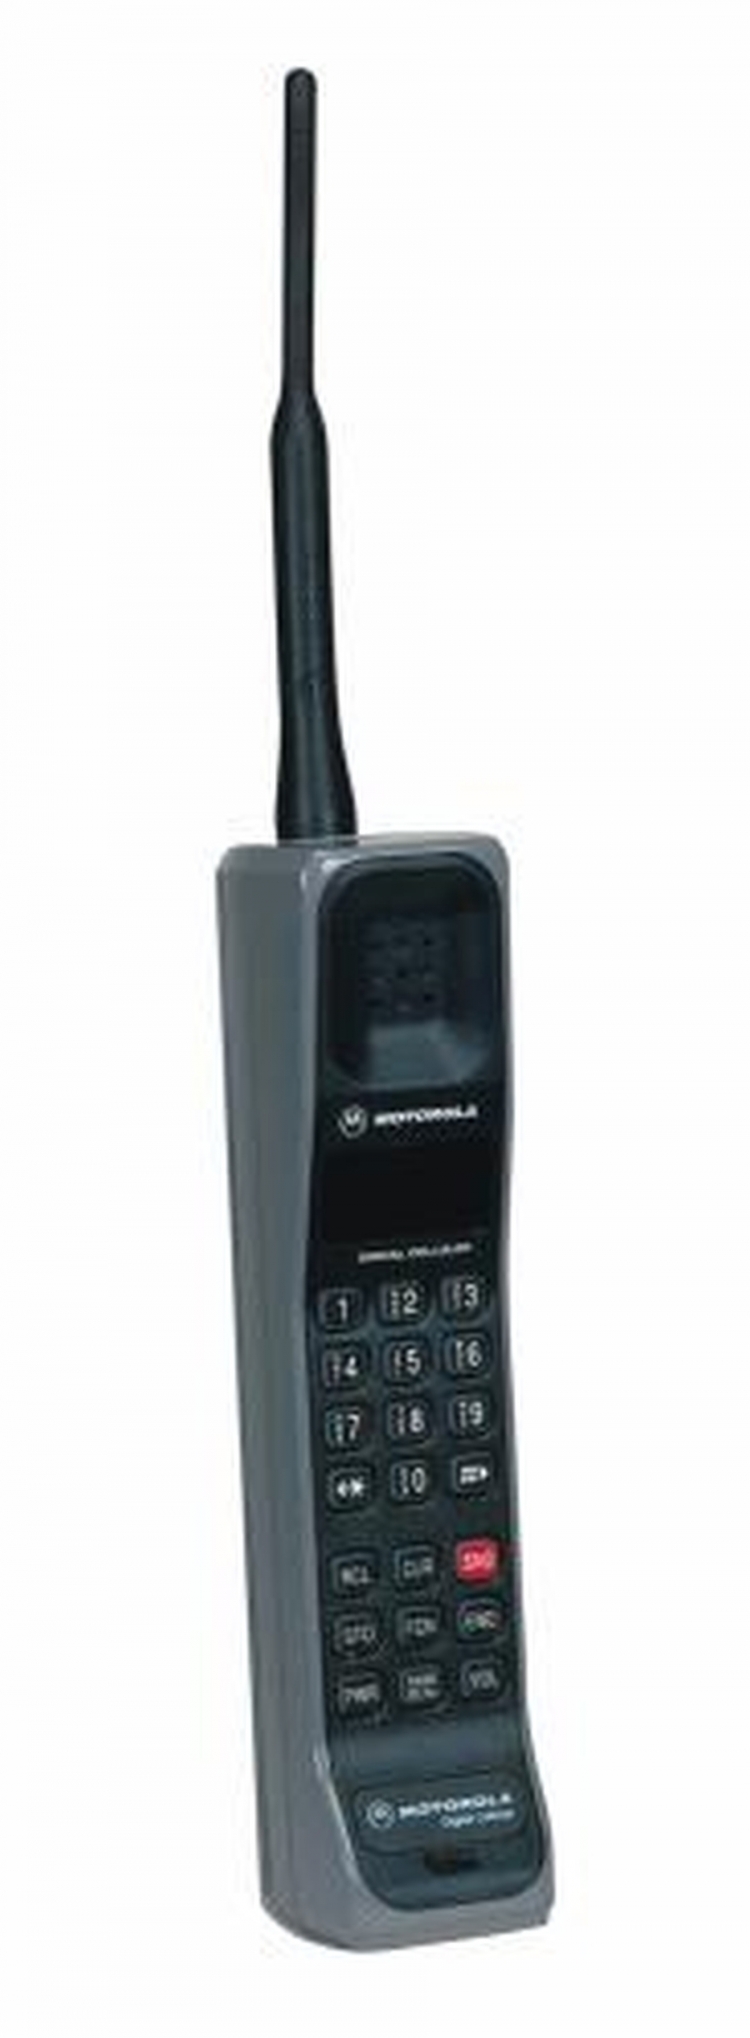 1992. godina - Motorola International 3200 / Prvi mobilni telefon sa digitalnim signalom.